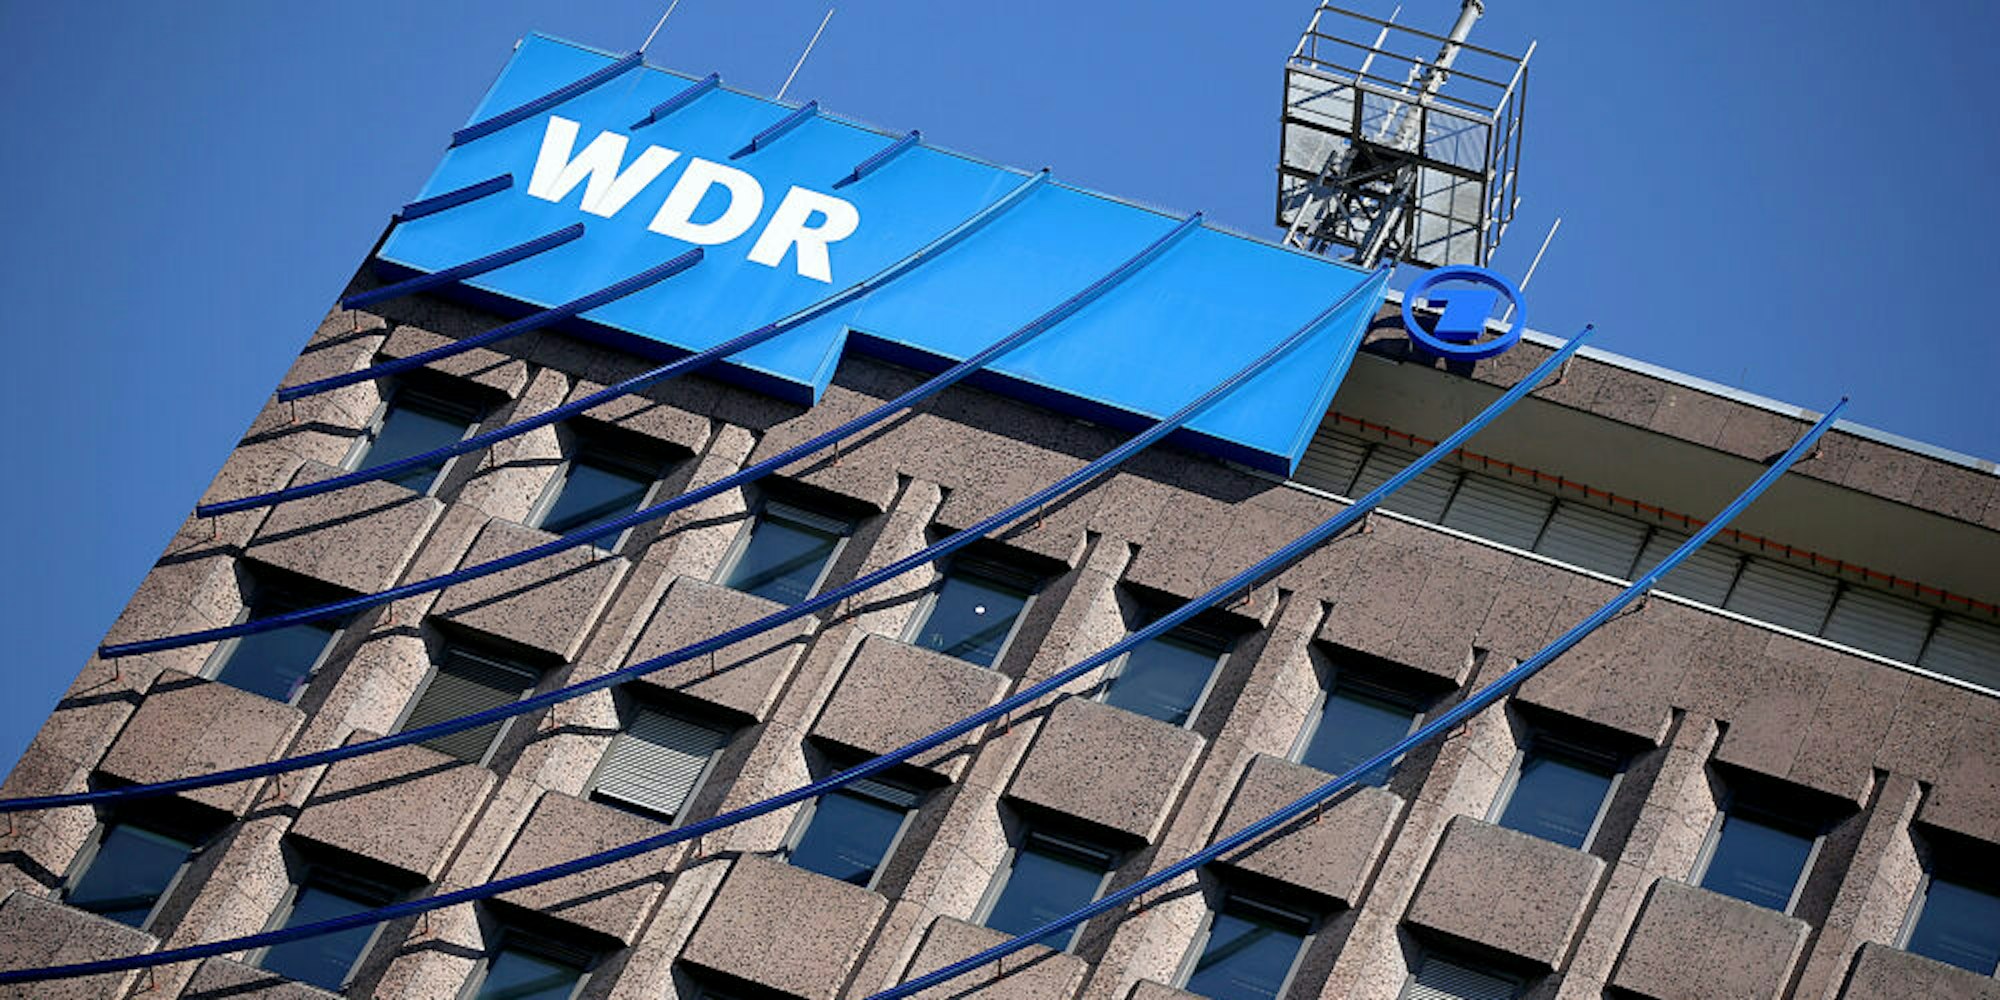 Bei der Protestaktion gegen das „Umweltsau“-Satirelied waren drei Männer auf ein WDR-Dach gestiegen.